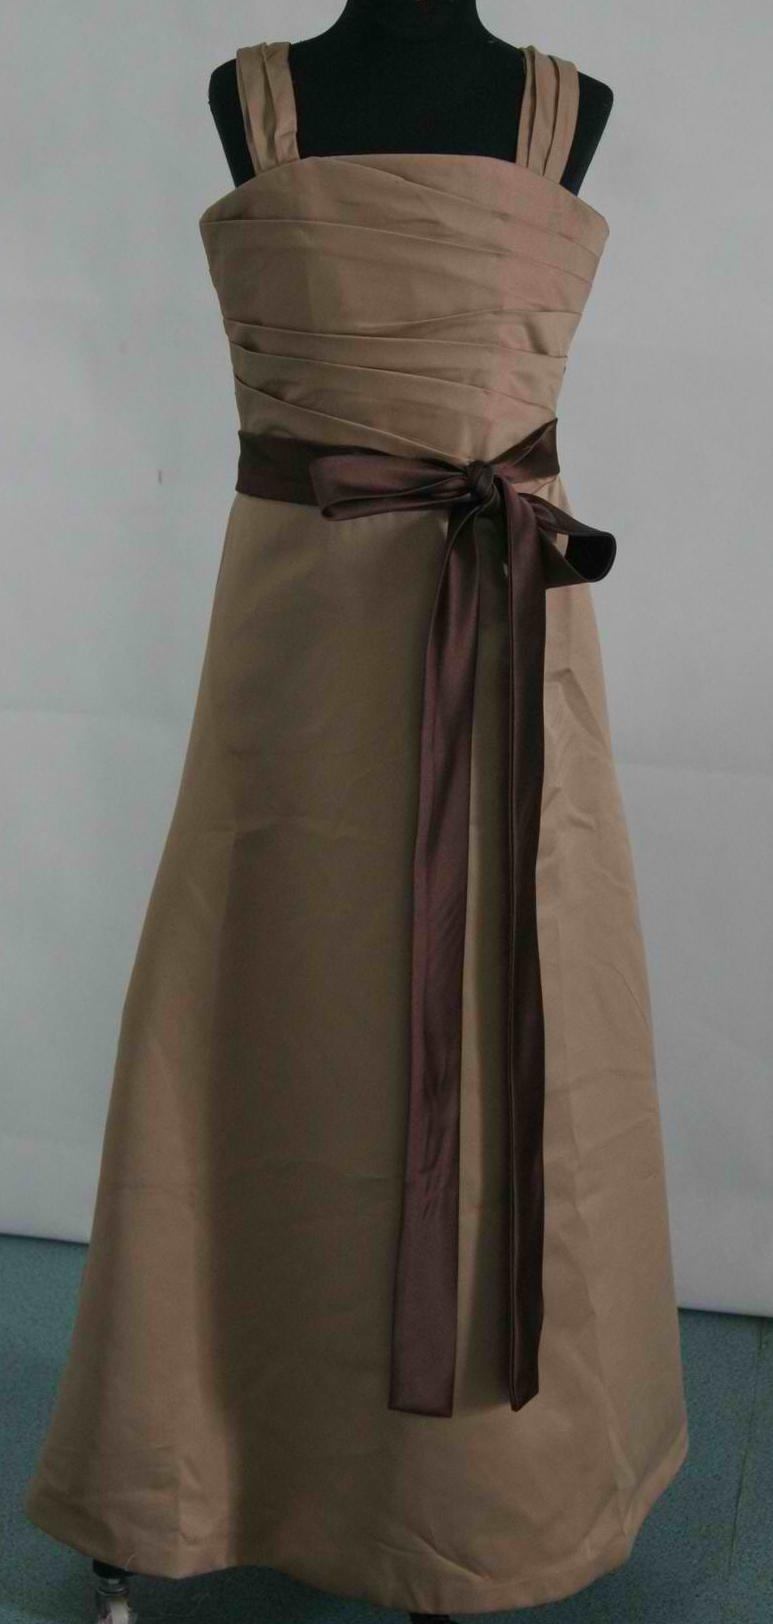 long satin caramel dress with chocolate sash